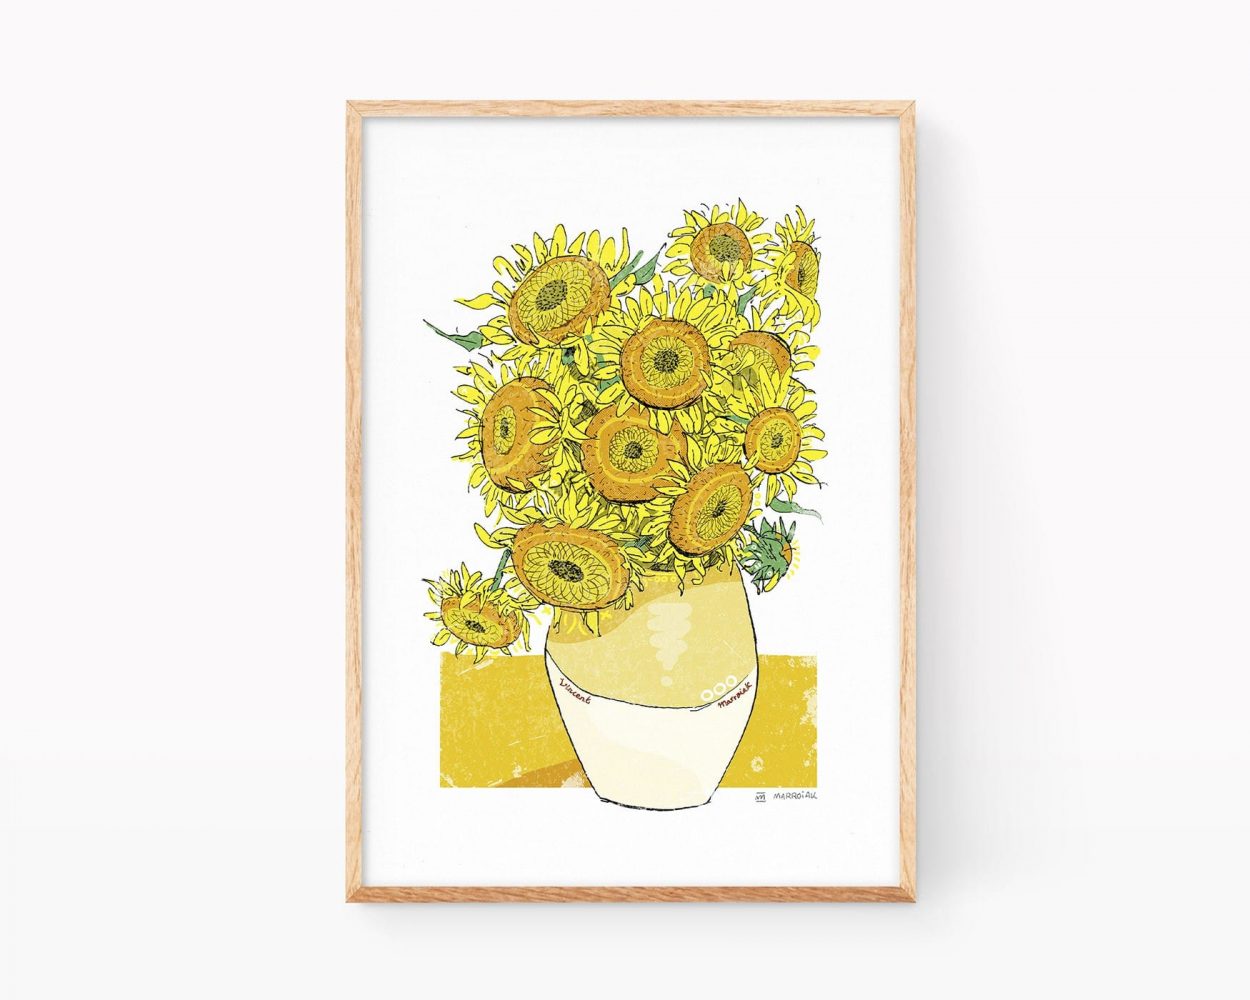 Cuadro remezclado de la pintura los Girasoles de Vang Gogh. Lámina (print) de una naturaleza muerta con ilustración de color naranja sobre fondo blanco. Pósters de arte contemporáneo.